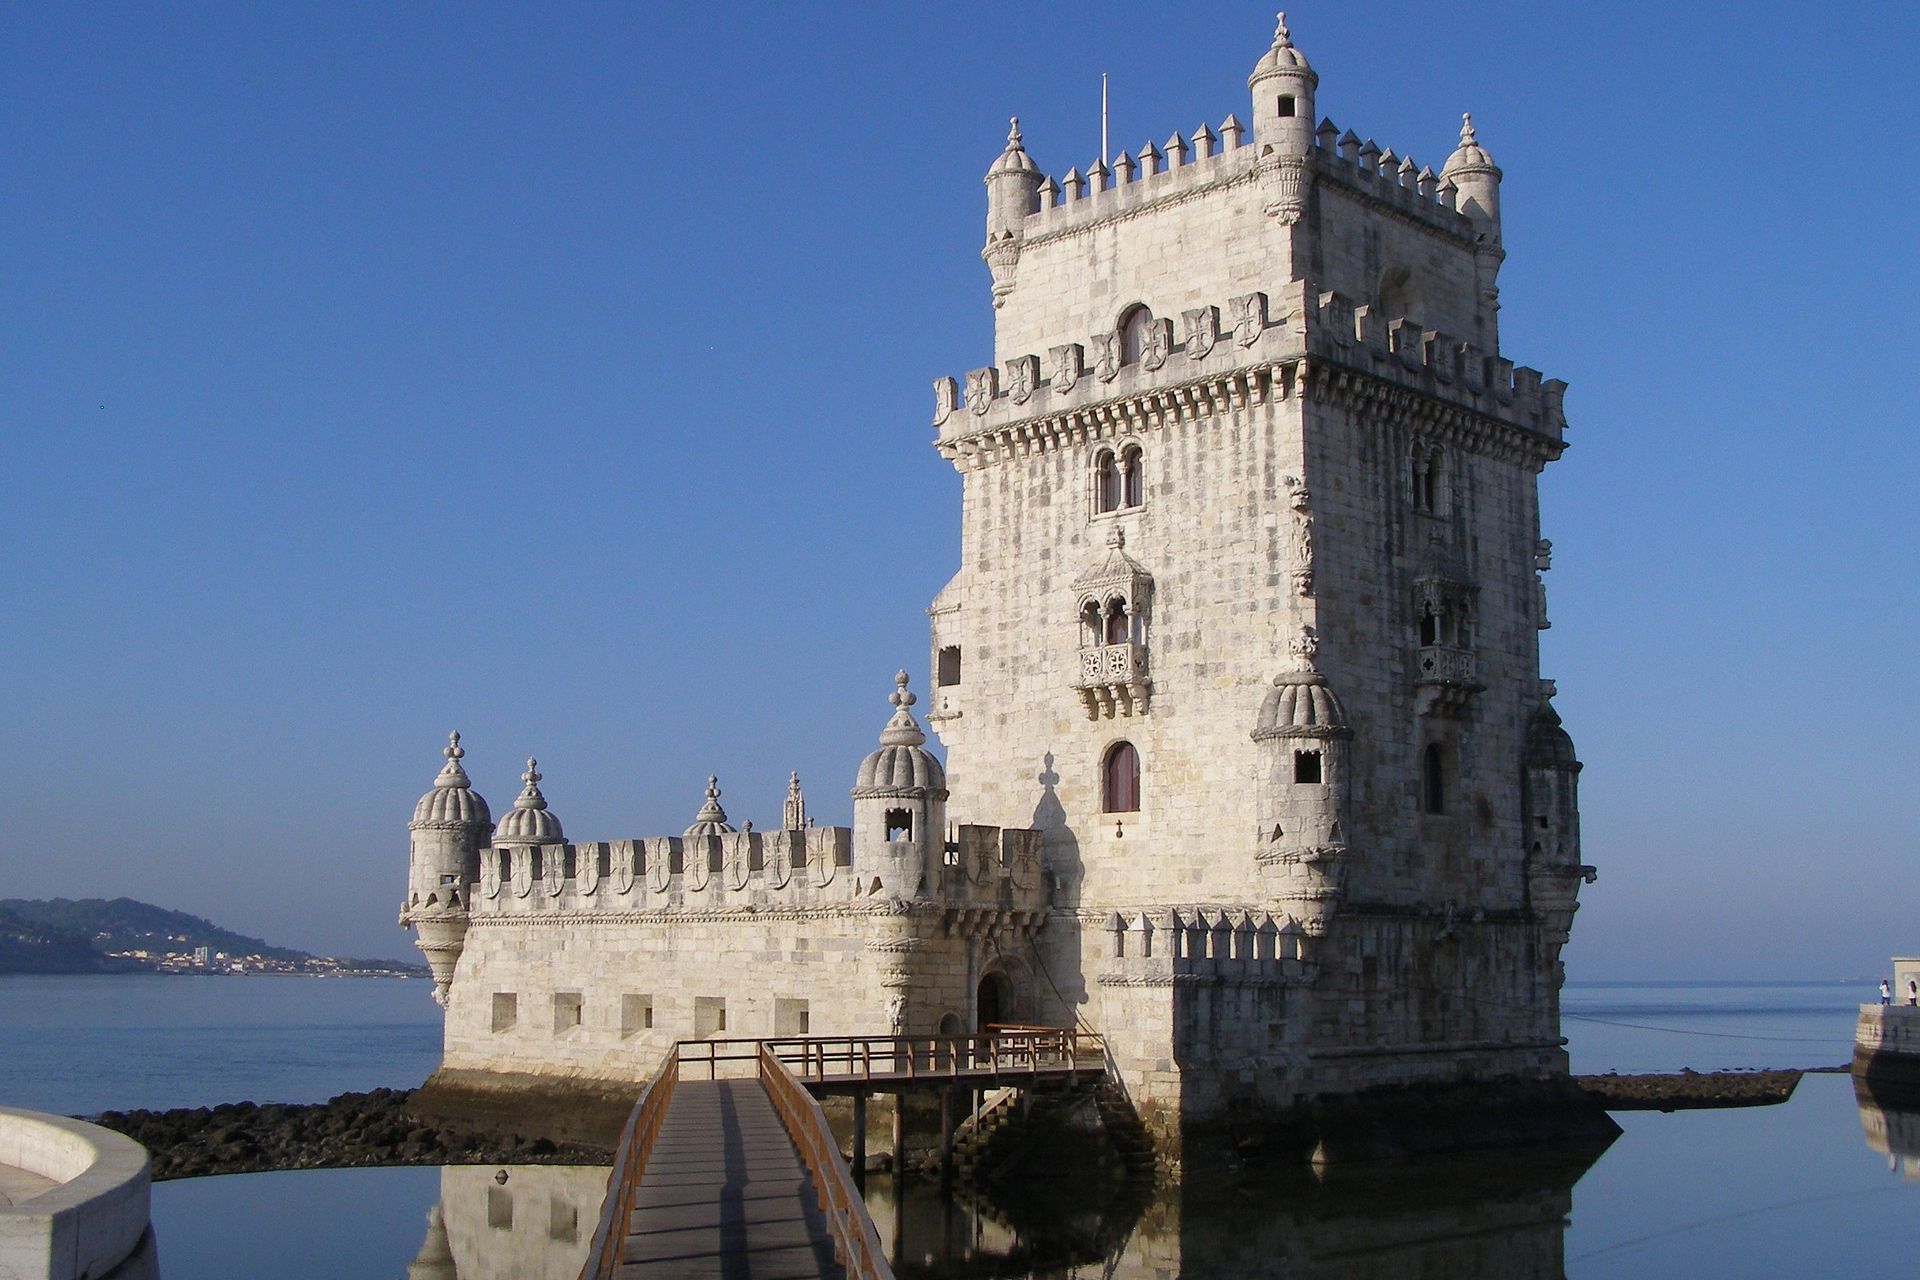 De Torre de Belém in Lissabon